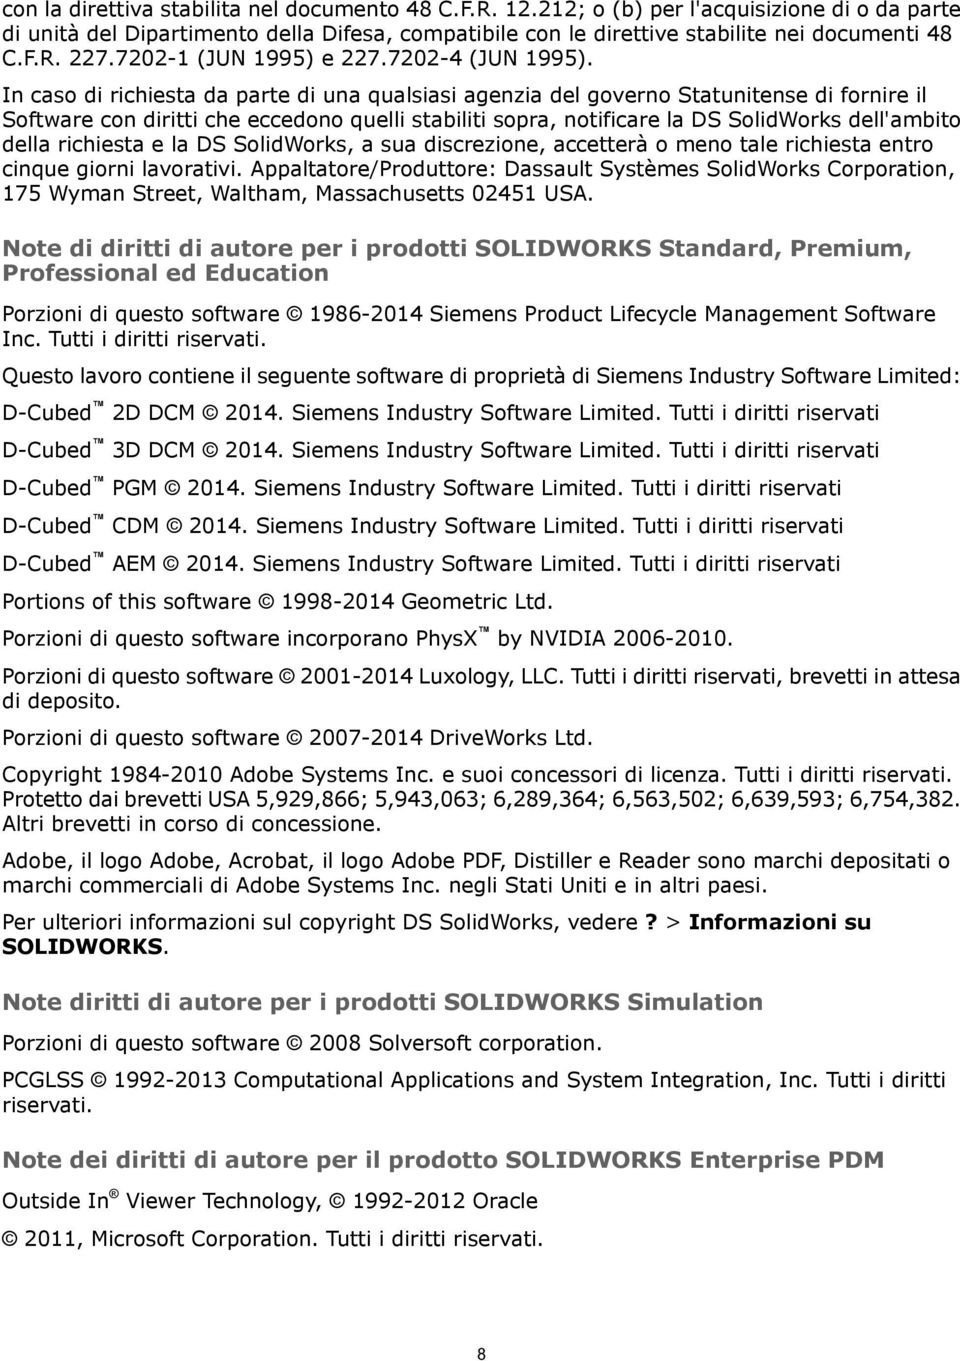 In caso di richiesta da parte di una qualsiasi agenzia del governo Statunitense di fornire il Software con diritti che eccedono quelli stabiliti sopra, notificare la DS SolidWorks dell'ambito della